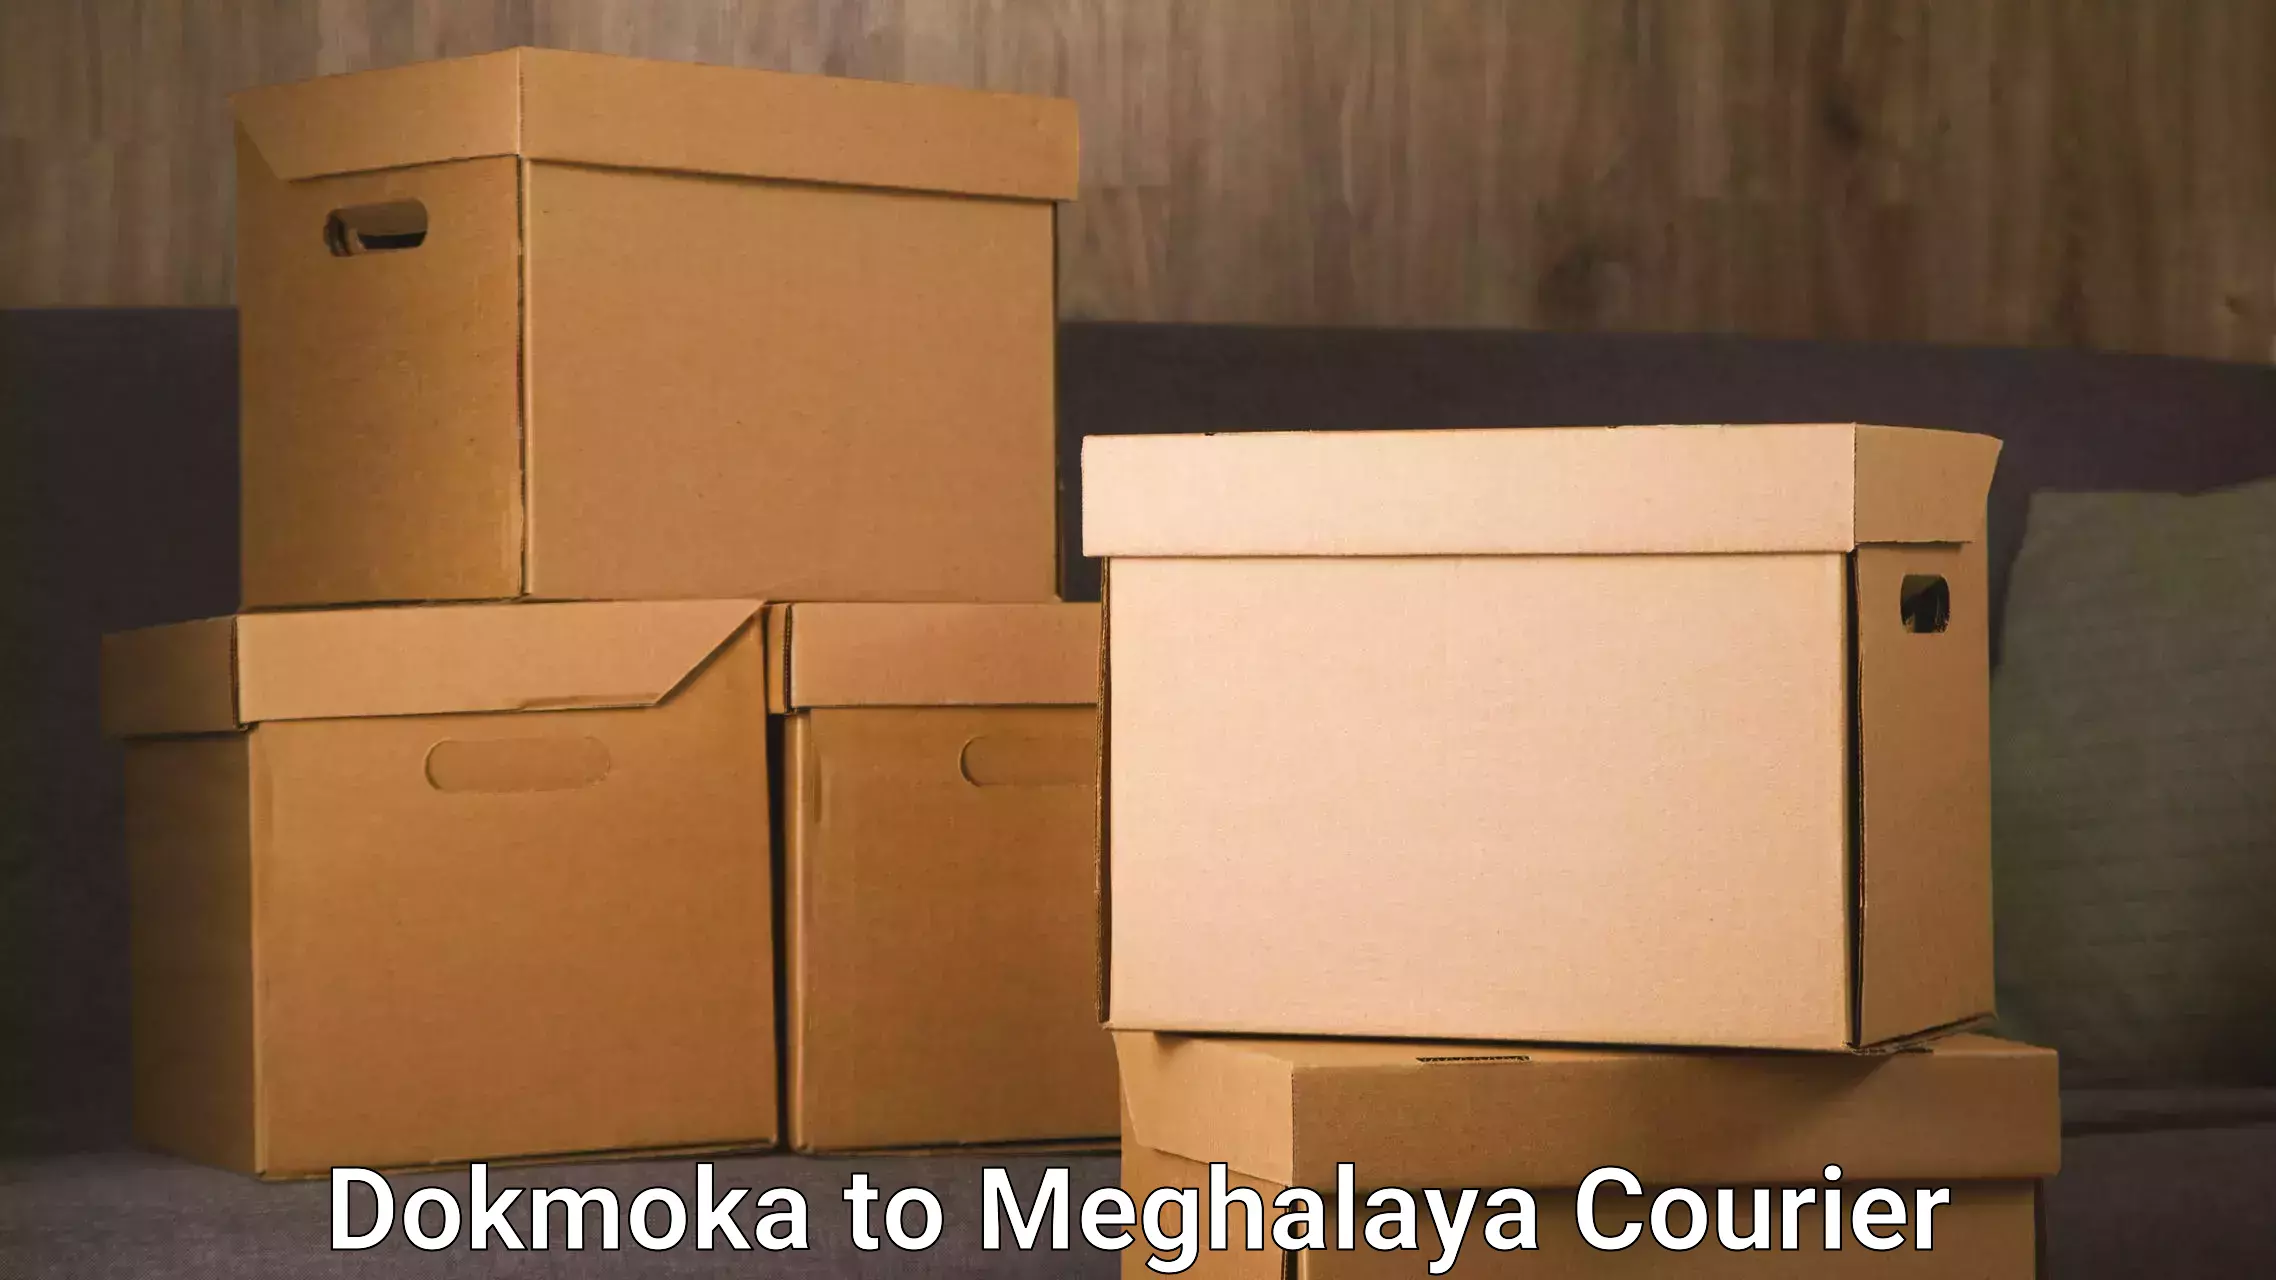 On-call courier service Dokmoka to Meghalaya